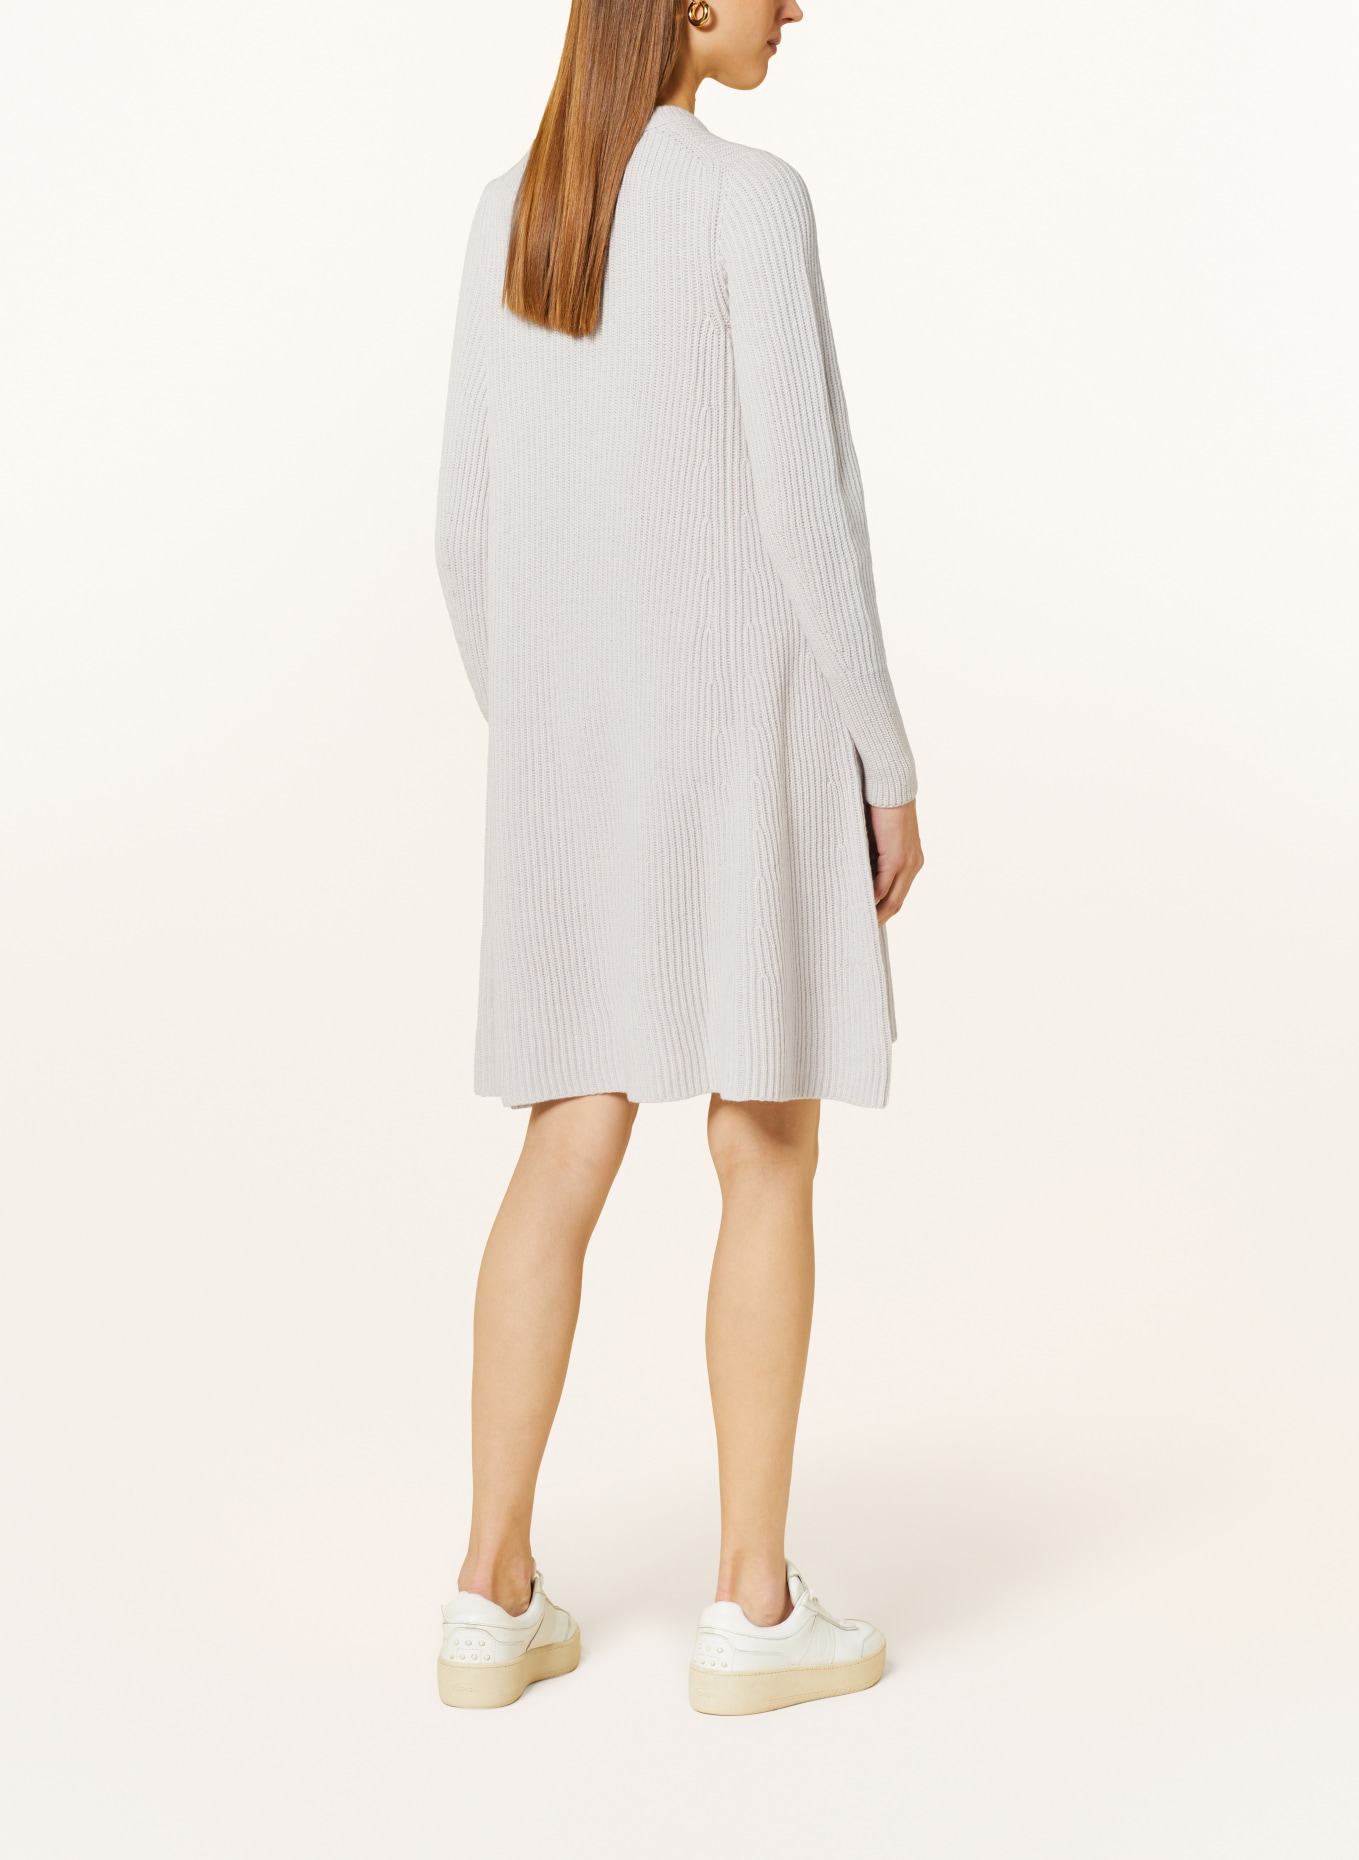 IRIS von ARNIM Knit dress MADELEINE in cashmere, Color: LIGHT GRAY (Image 3)